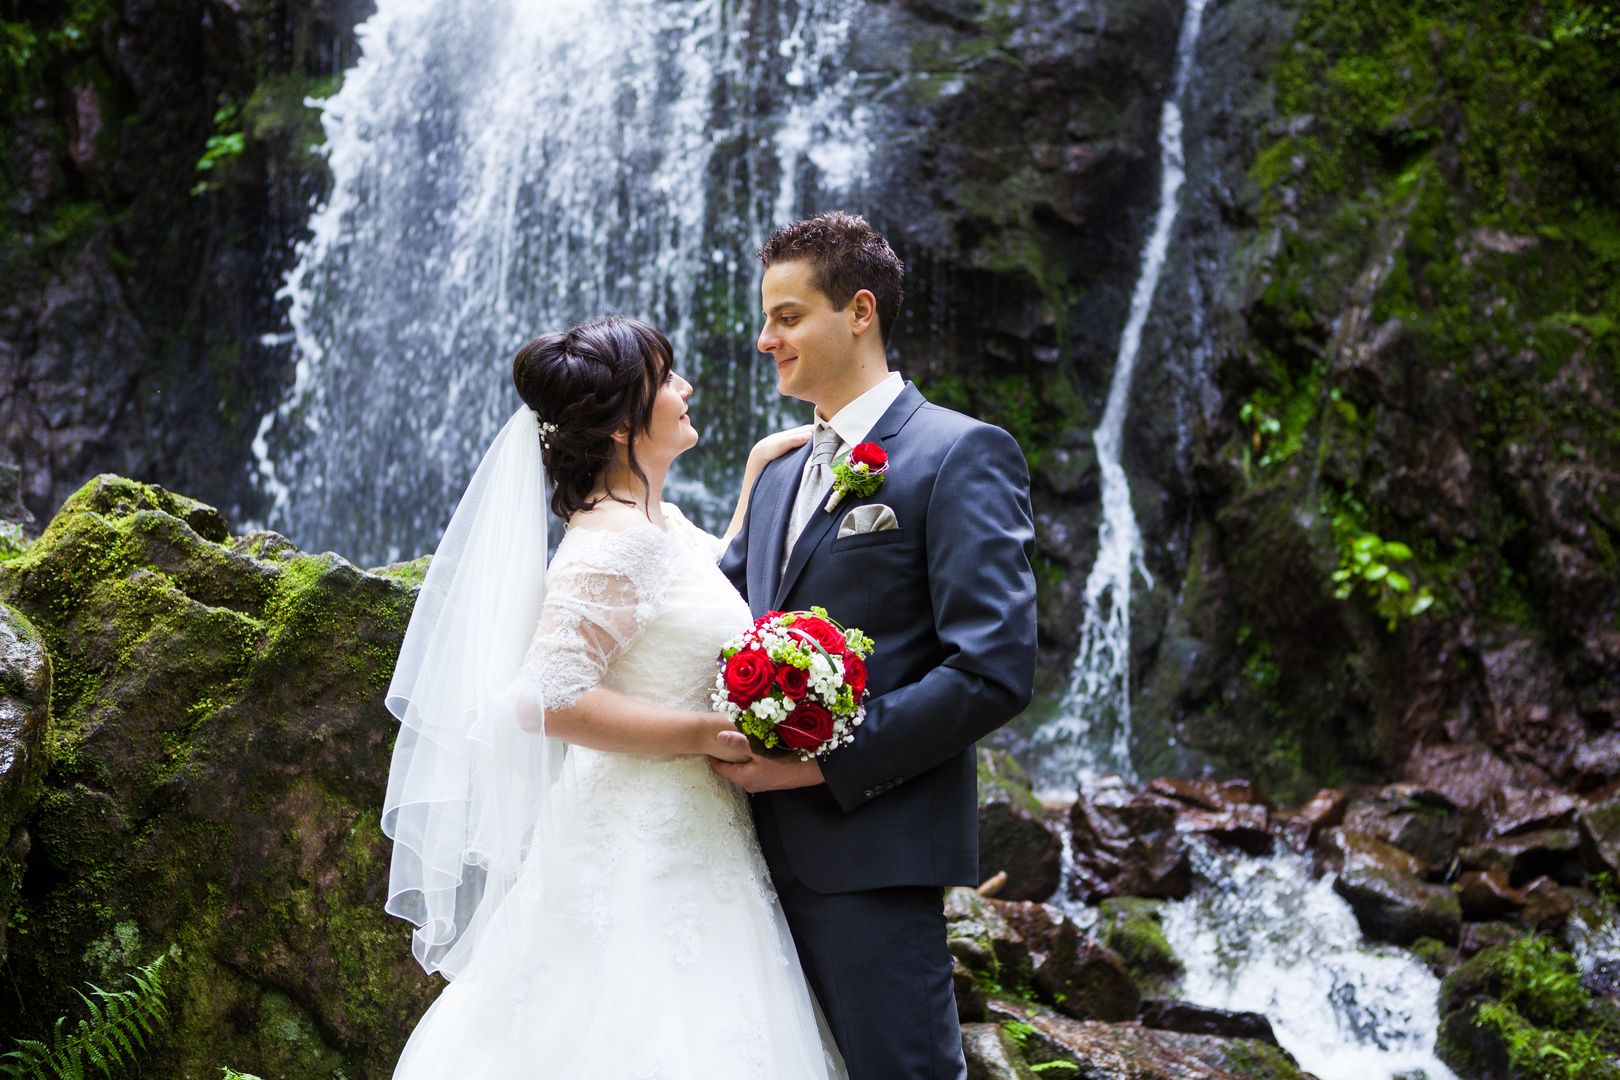  Brautpaar-Shooting am Wasserfall im Schwarzwald